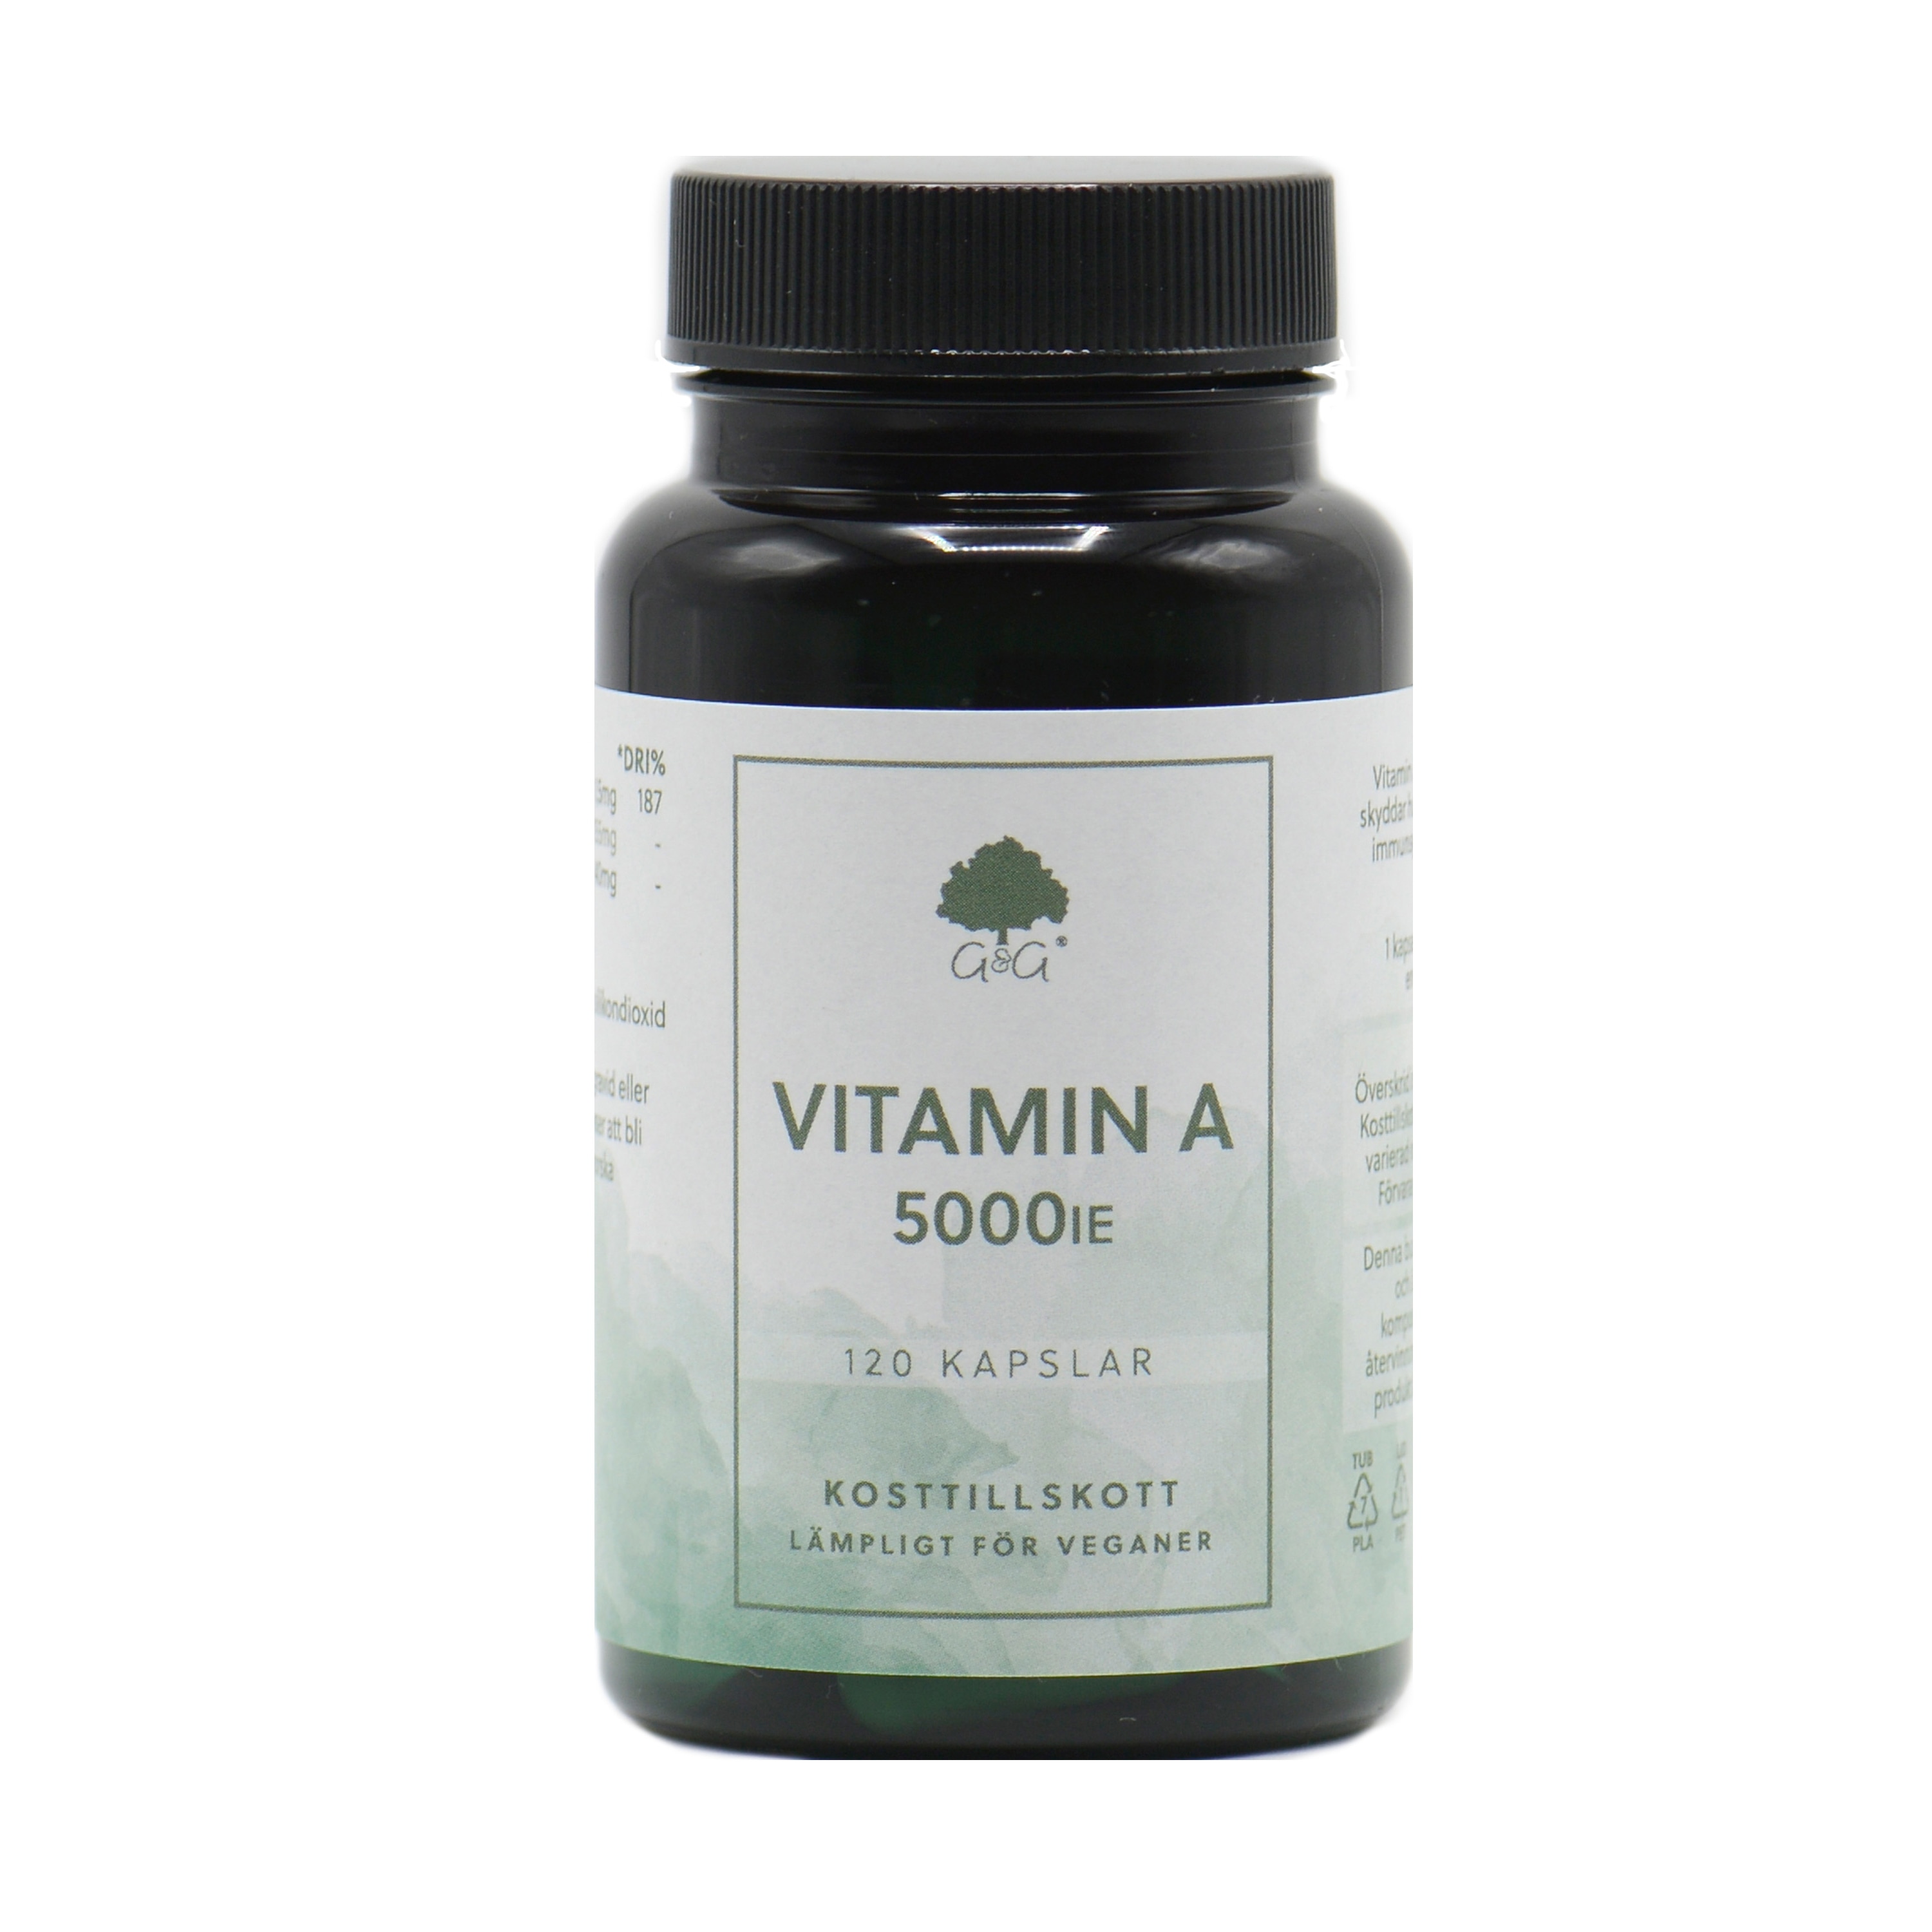 Vitamin A 5000iu 120 kapslar